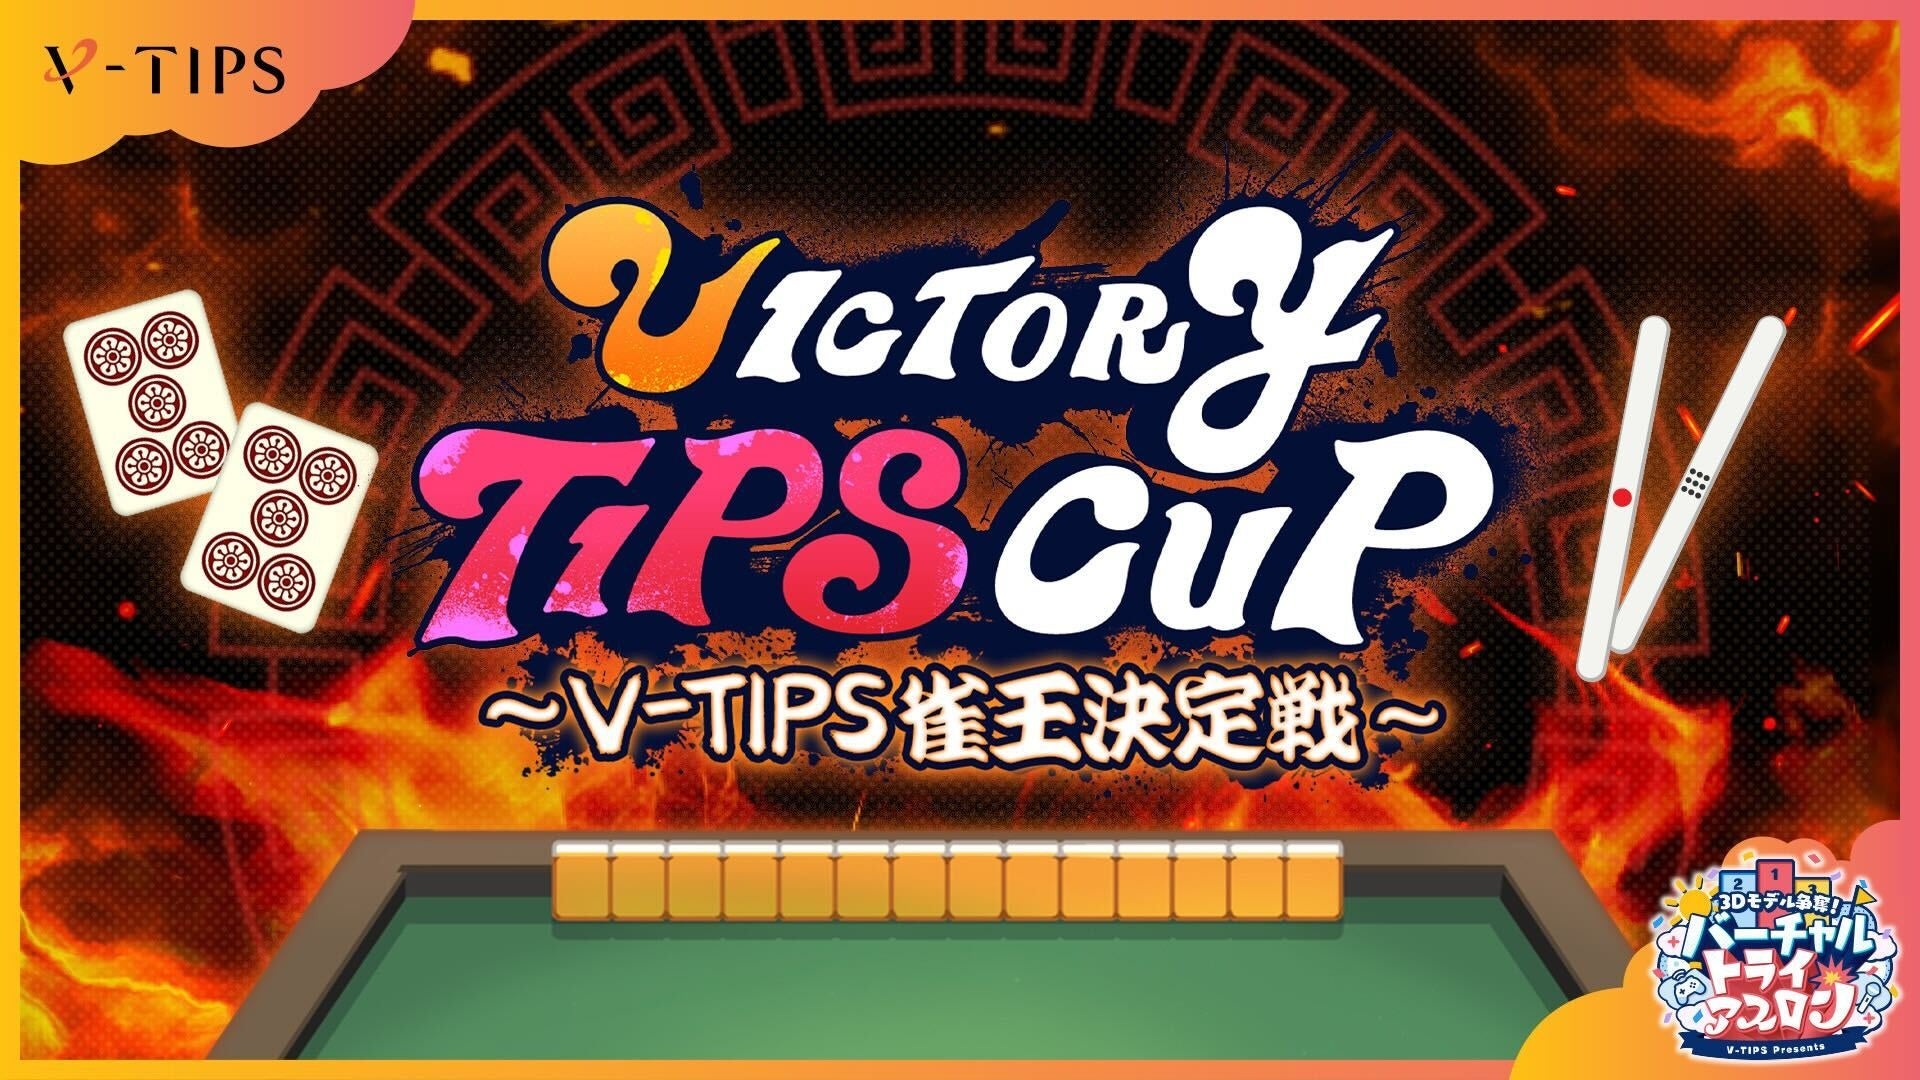 3/30(y)ɊJÂuVICTORY TIPS CUP`V-TIPS`v̐E^cRATELS